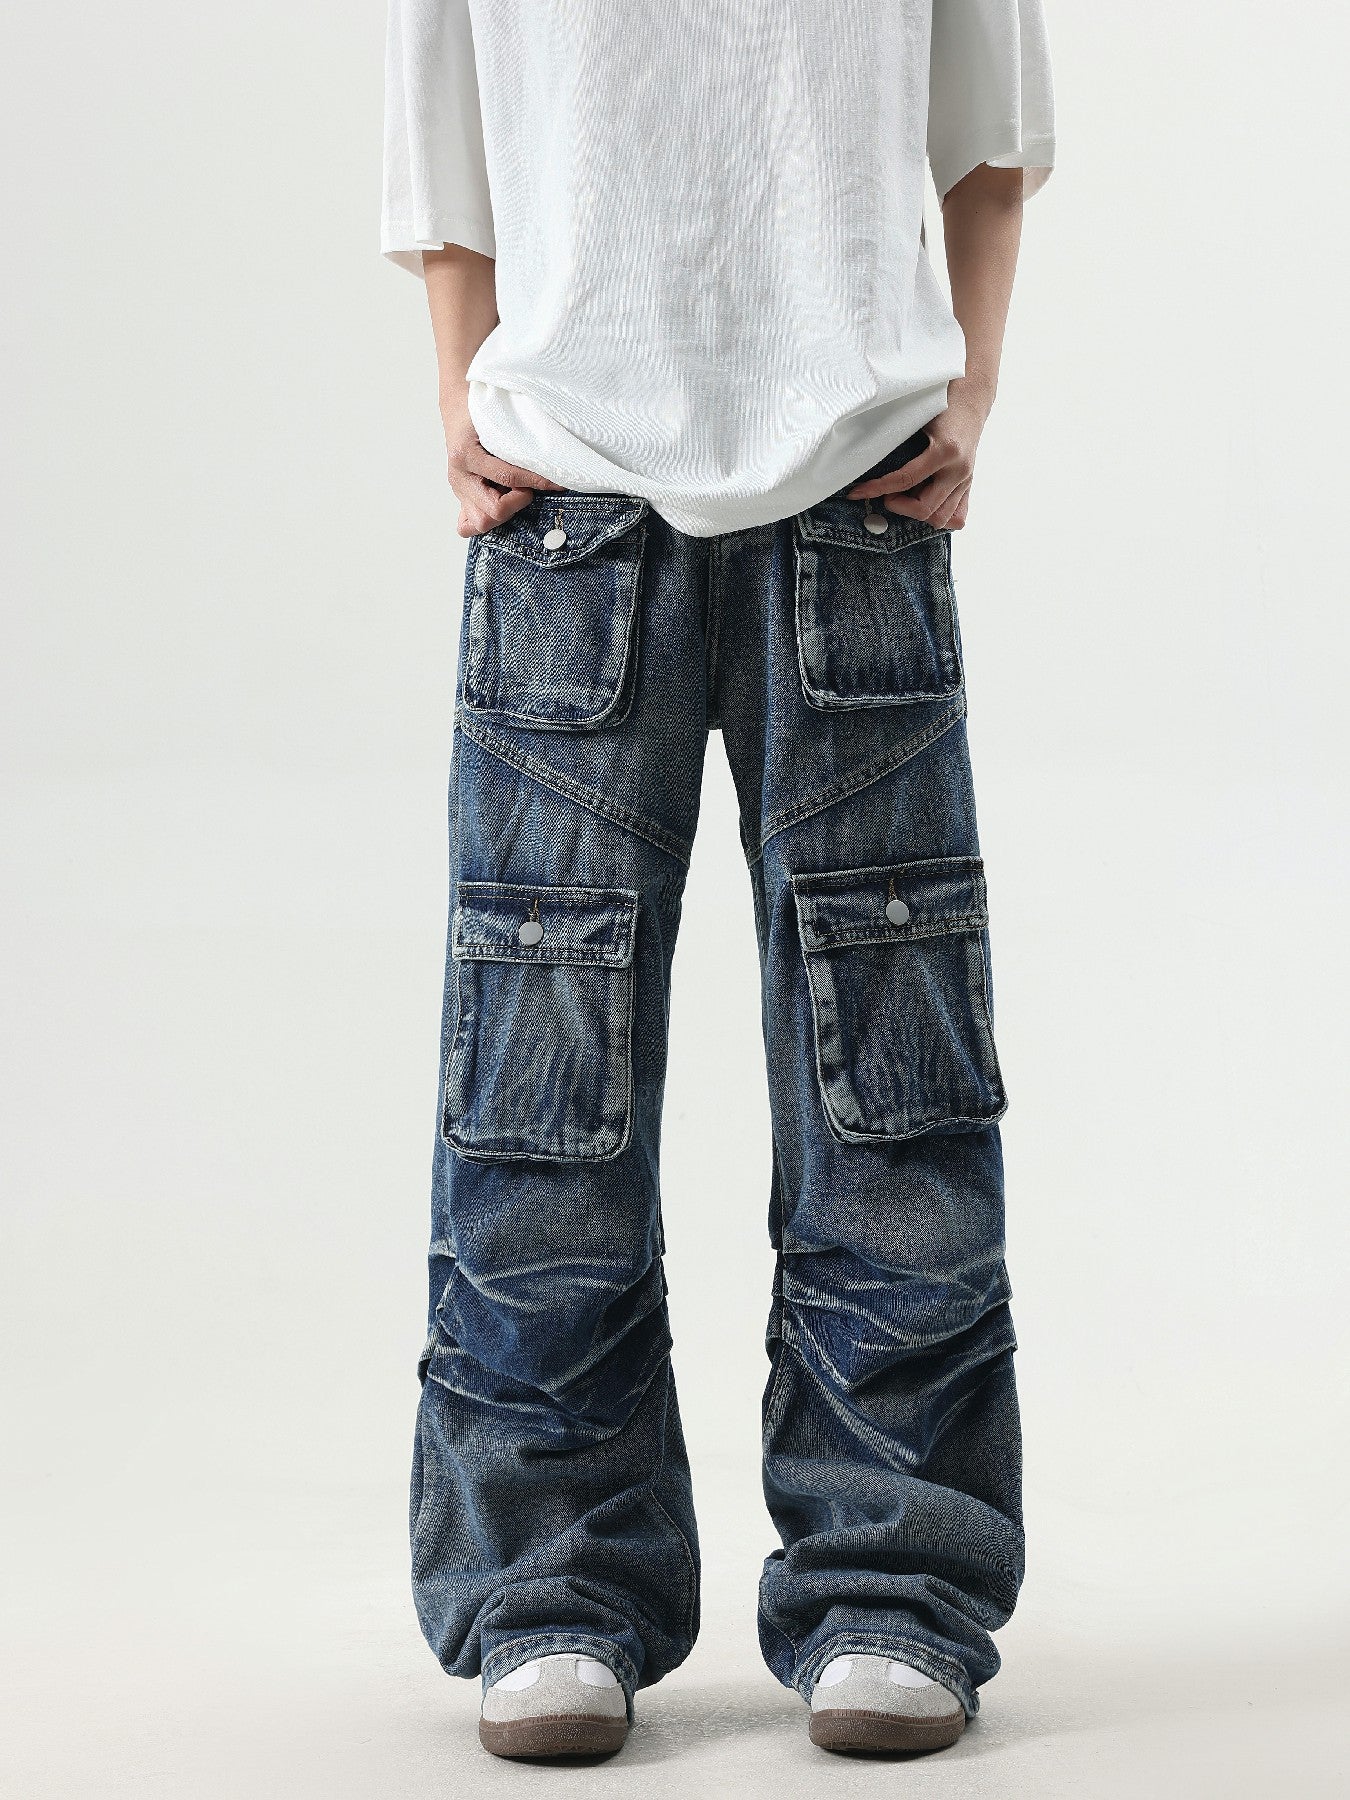 'Retro Multi-Function' Jeans - Santo 